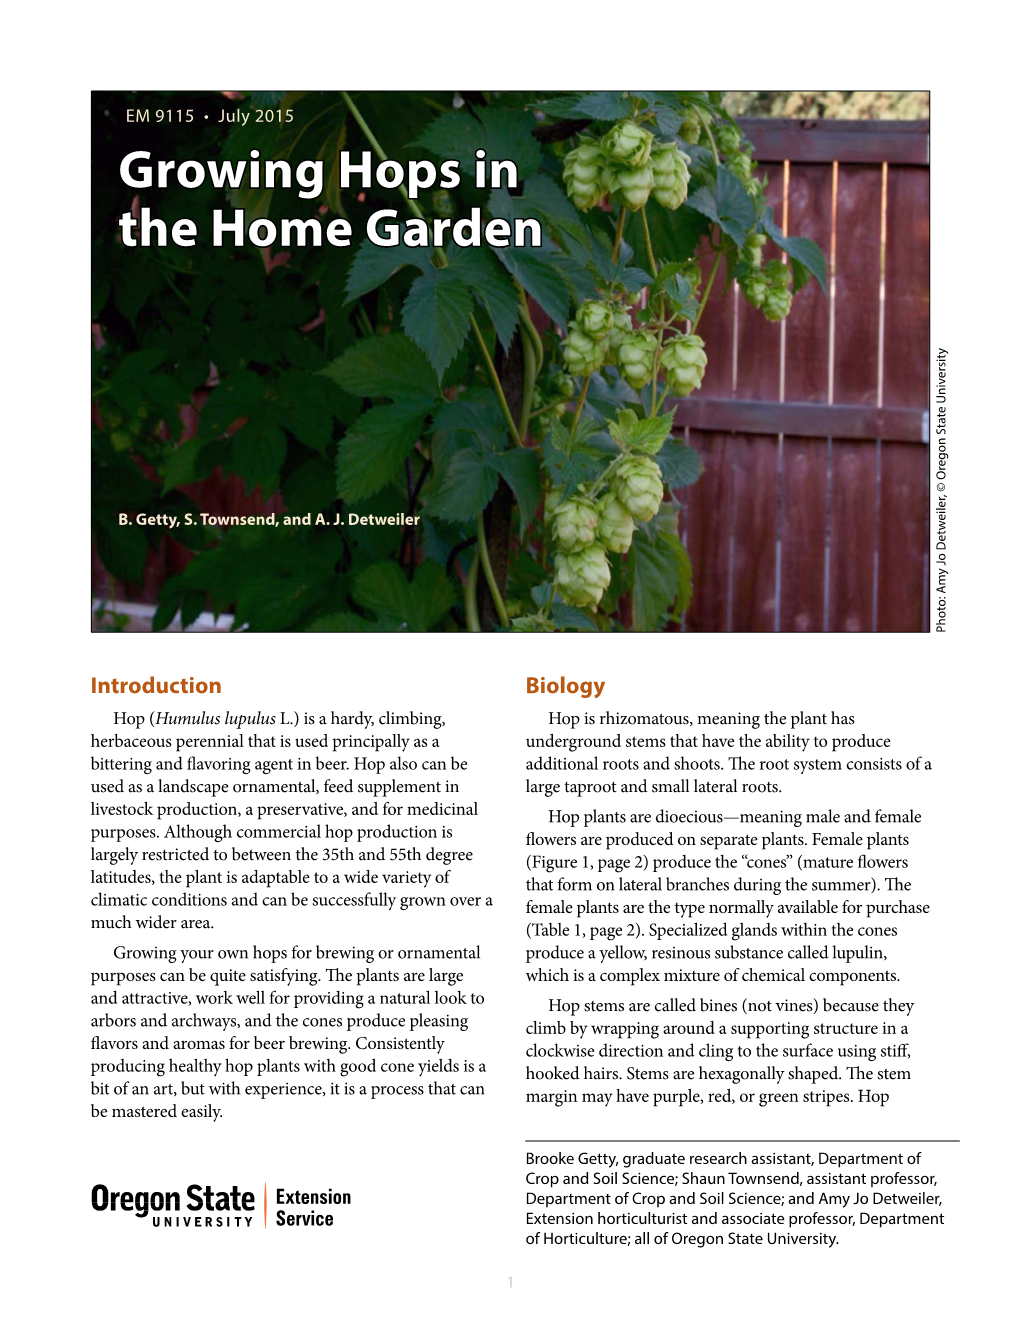 Growing Hops in the Home Garden